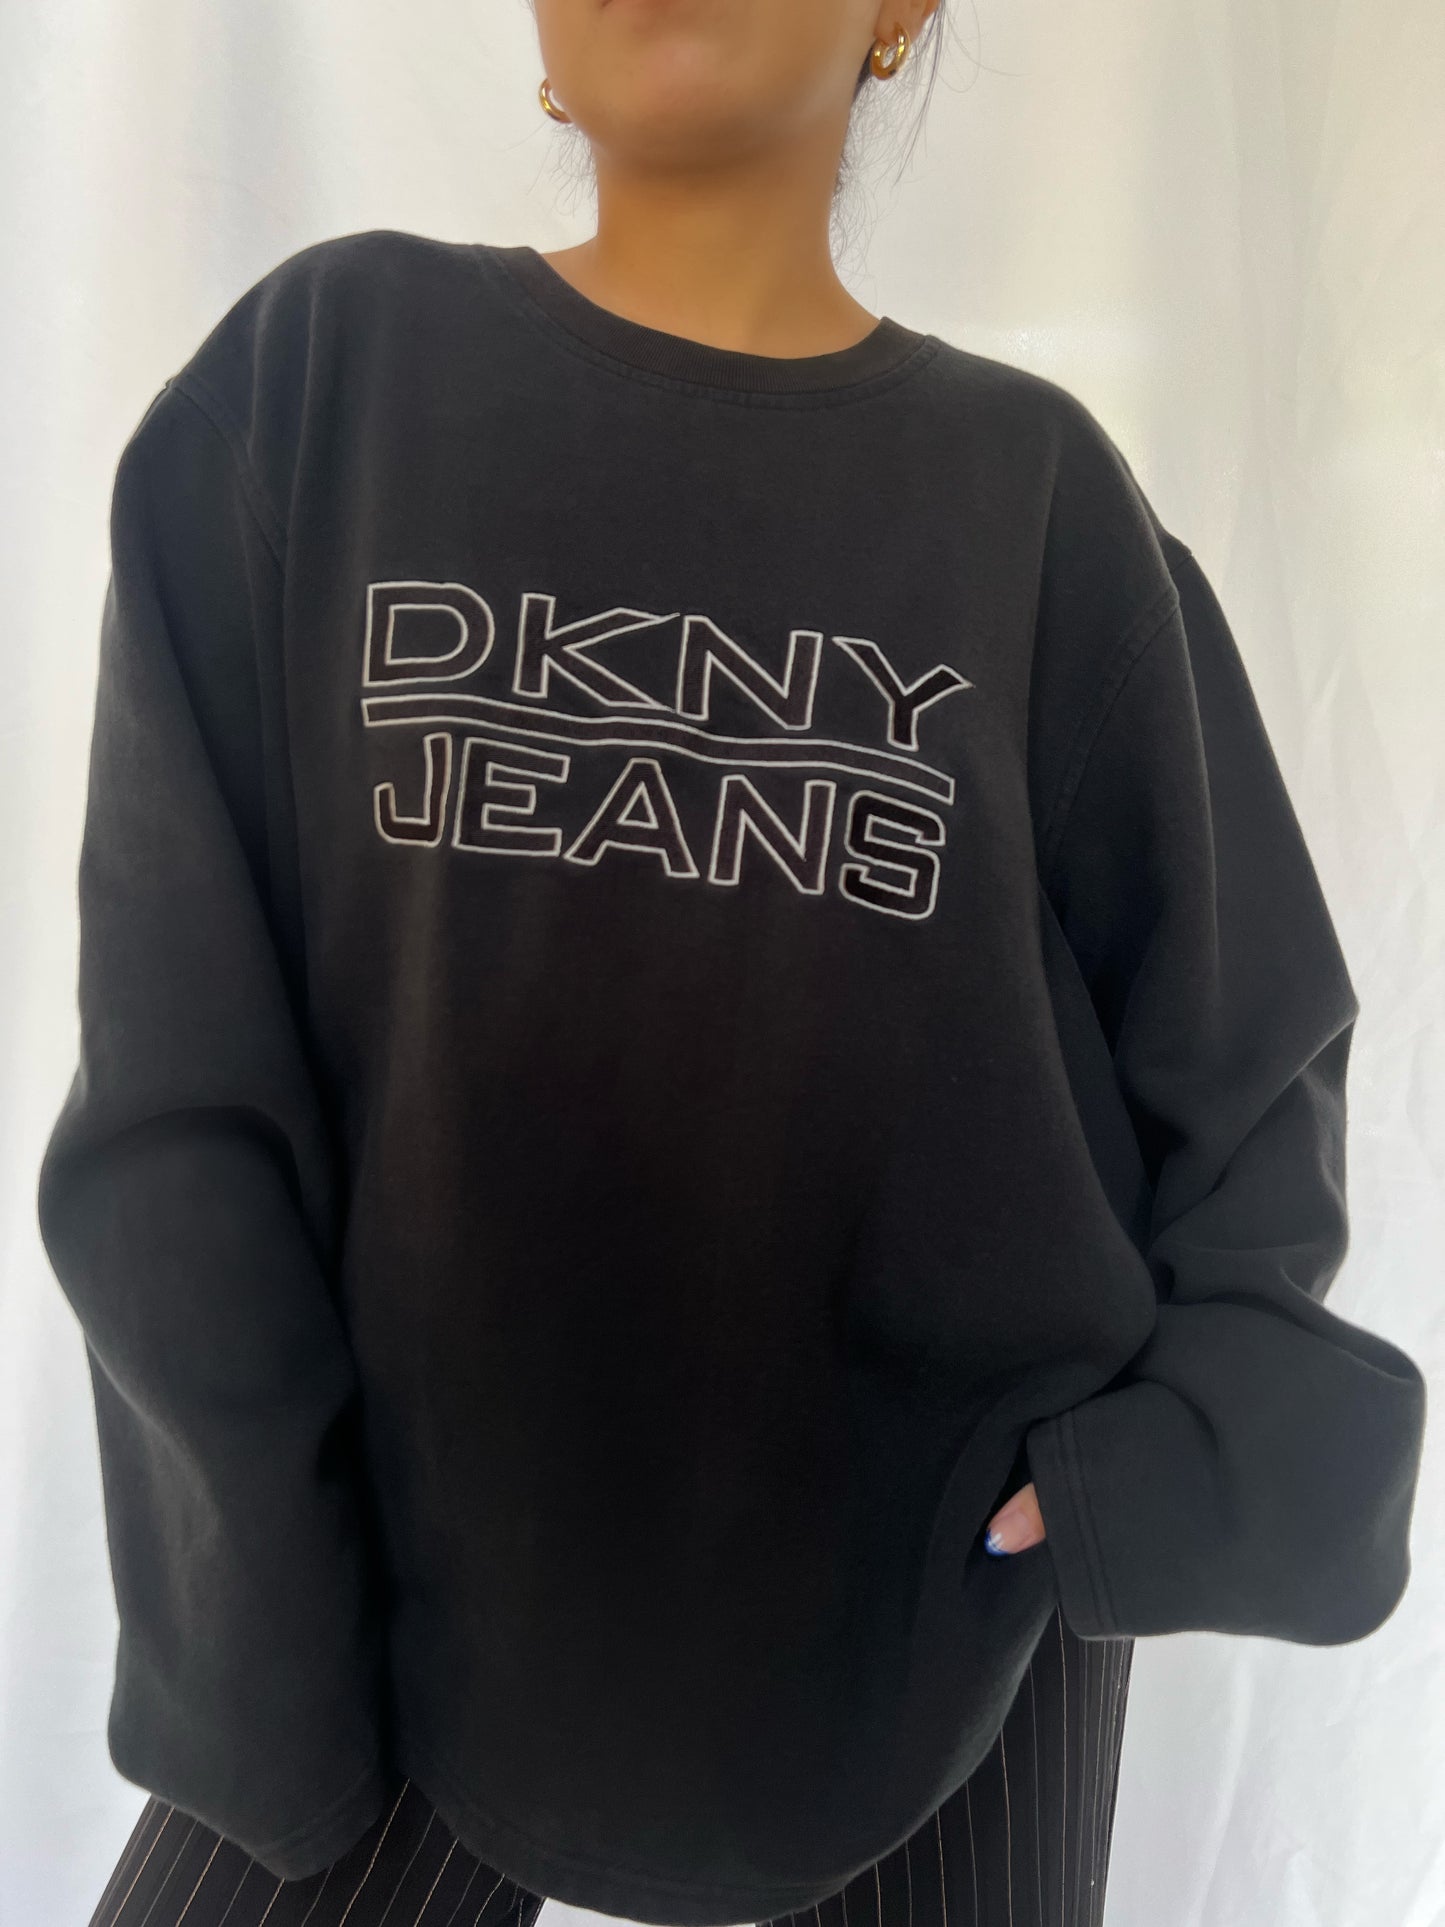 DKNY Jeans Crewneck - L/XL